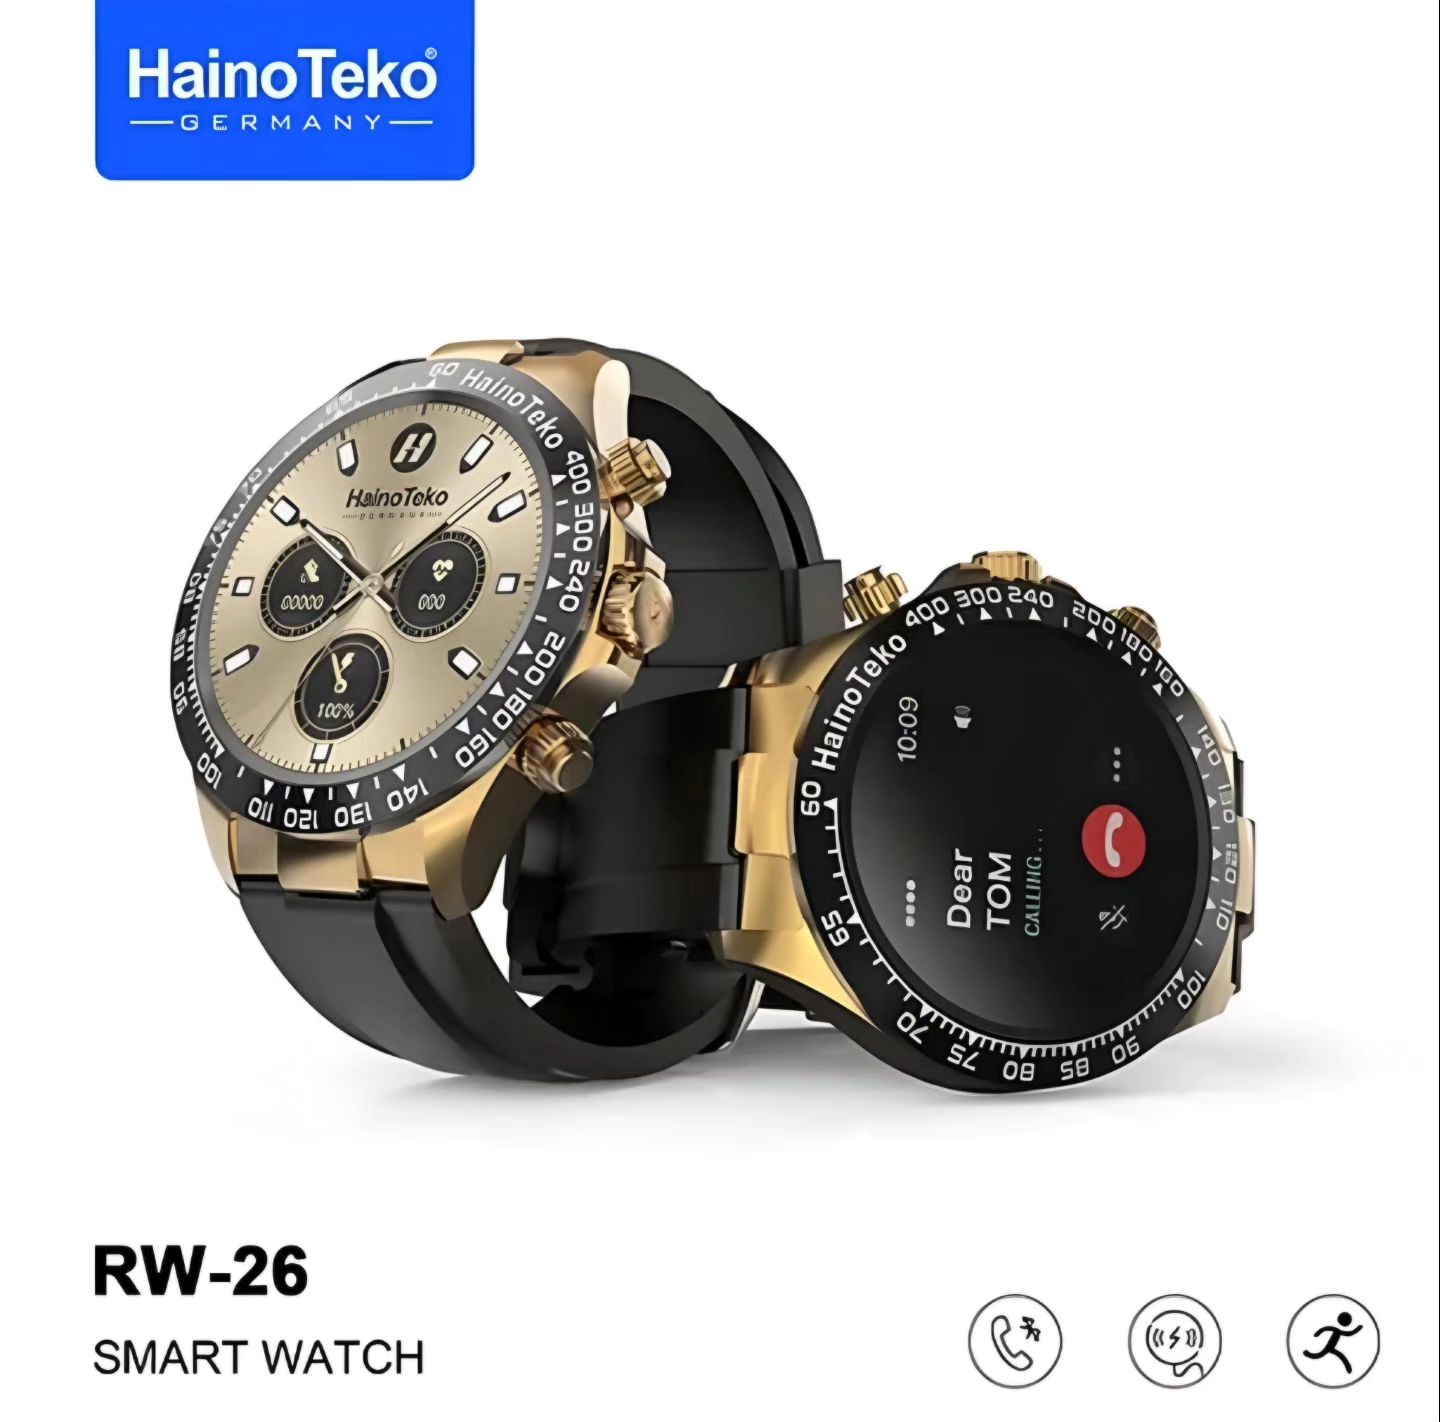 HainoTeko Germany RW-26 (1 Year Warranty)